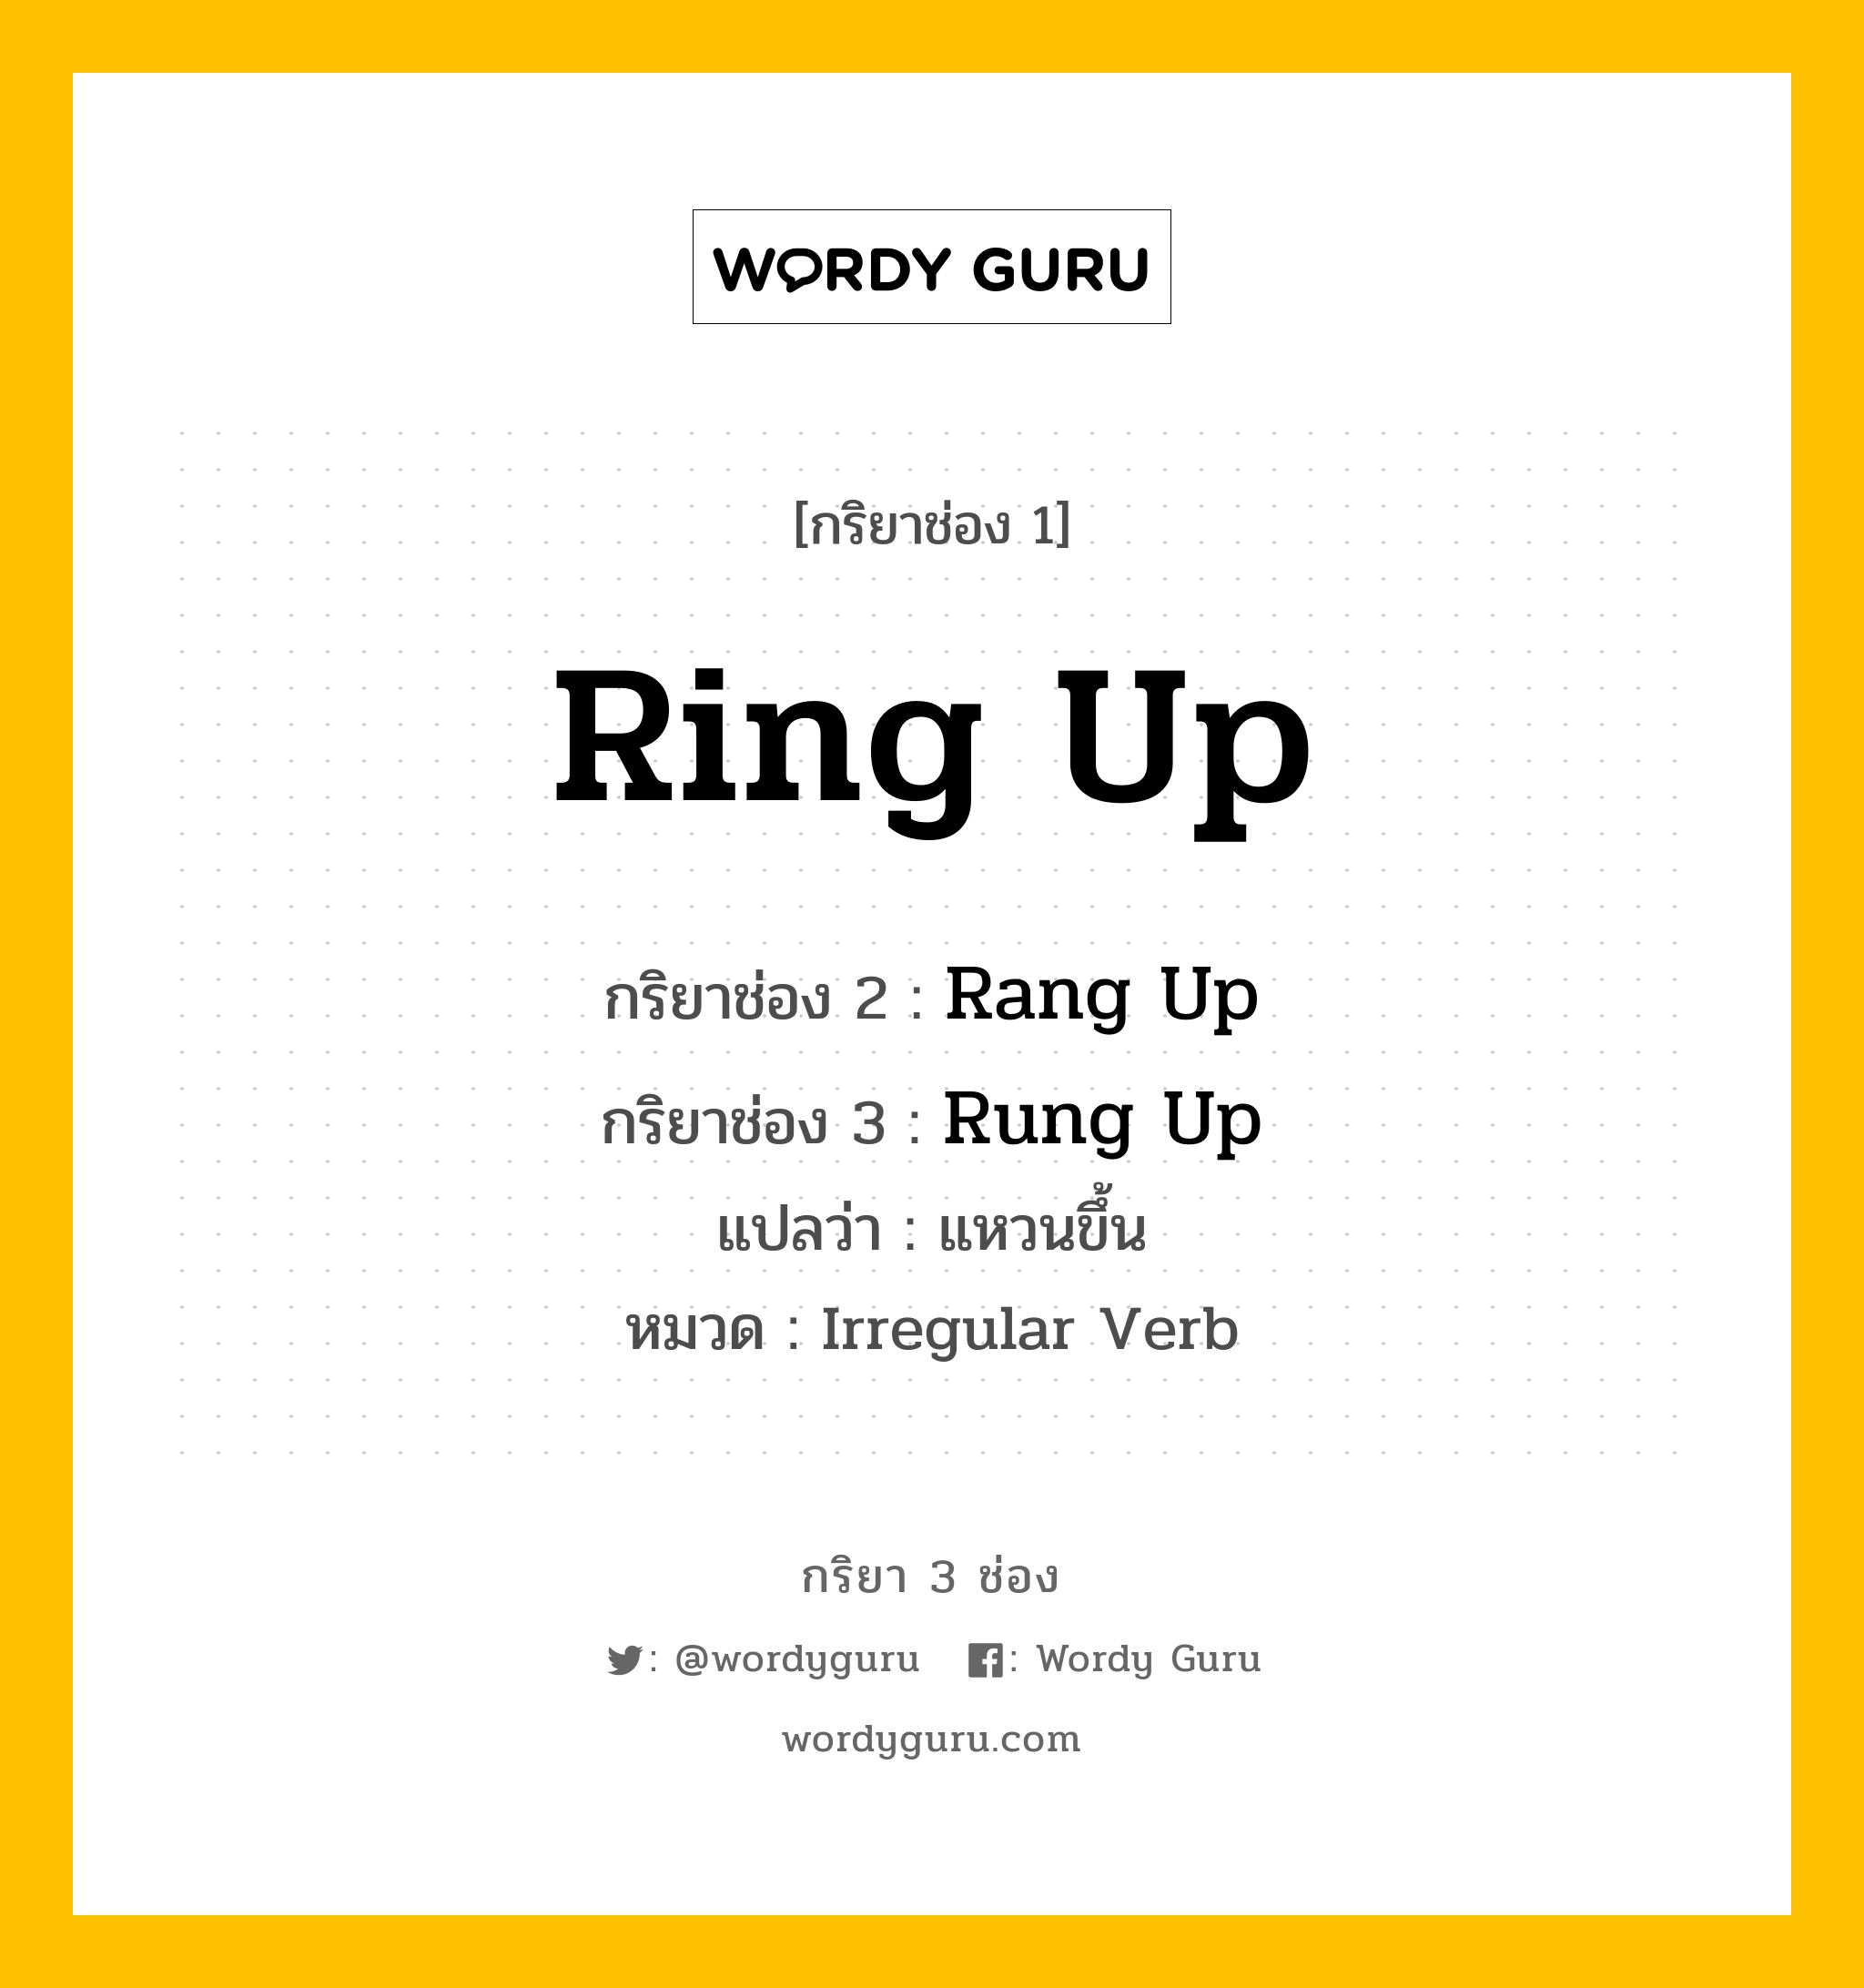 กริยา 3 ช่อง: Ring Up ช่อง 2 Ring Up ช่อง 3 คืออะไร, กริยาช่อง 1 Ring Up กริยาช่อง 2 Rang Up กริยาช่อง 3 Rung Up แปลว่า แหวนขึ้น หมวด Irregular Verb หมวด Irregular Verb